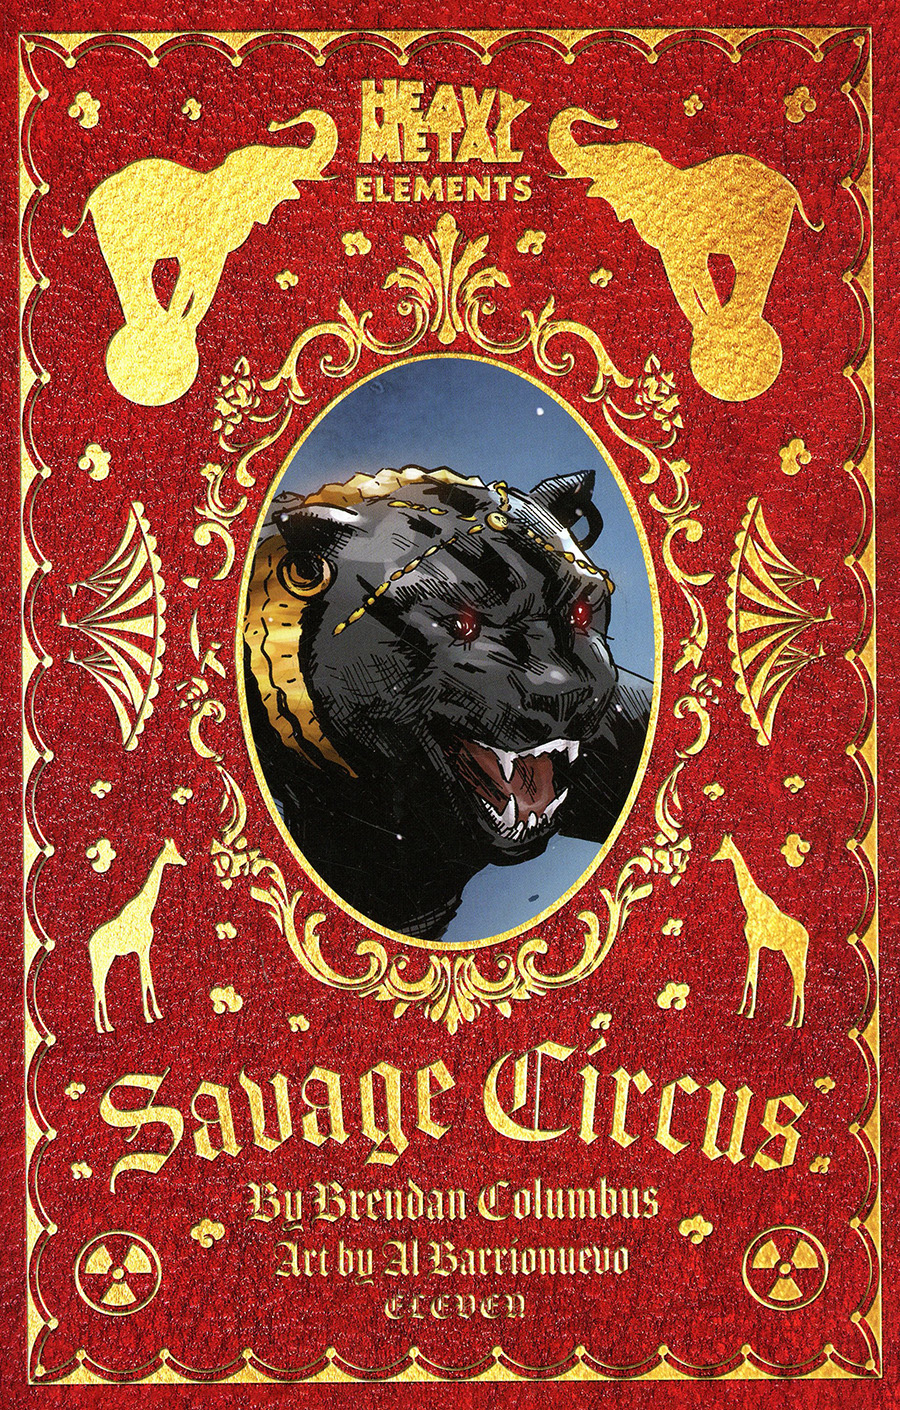 Savage Circus #11